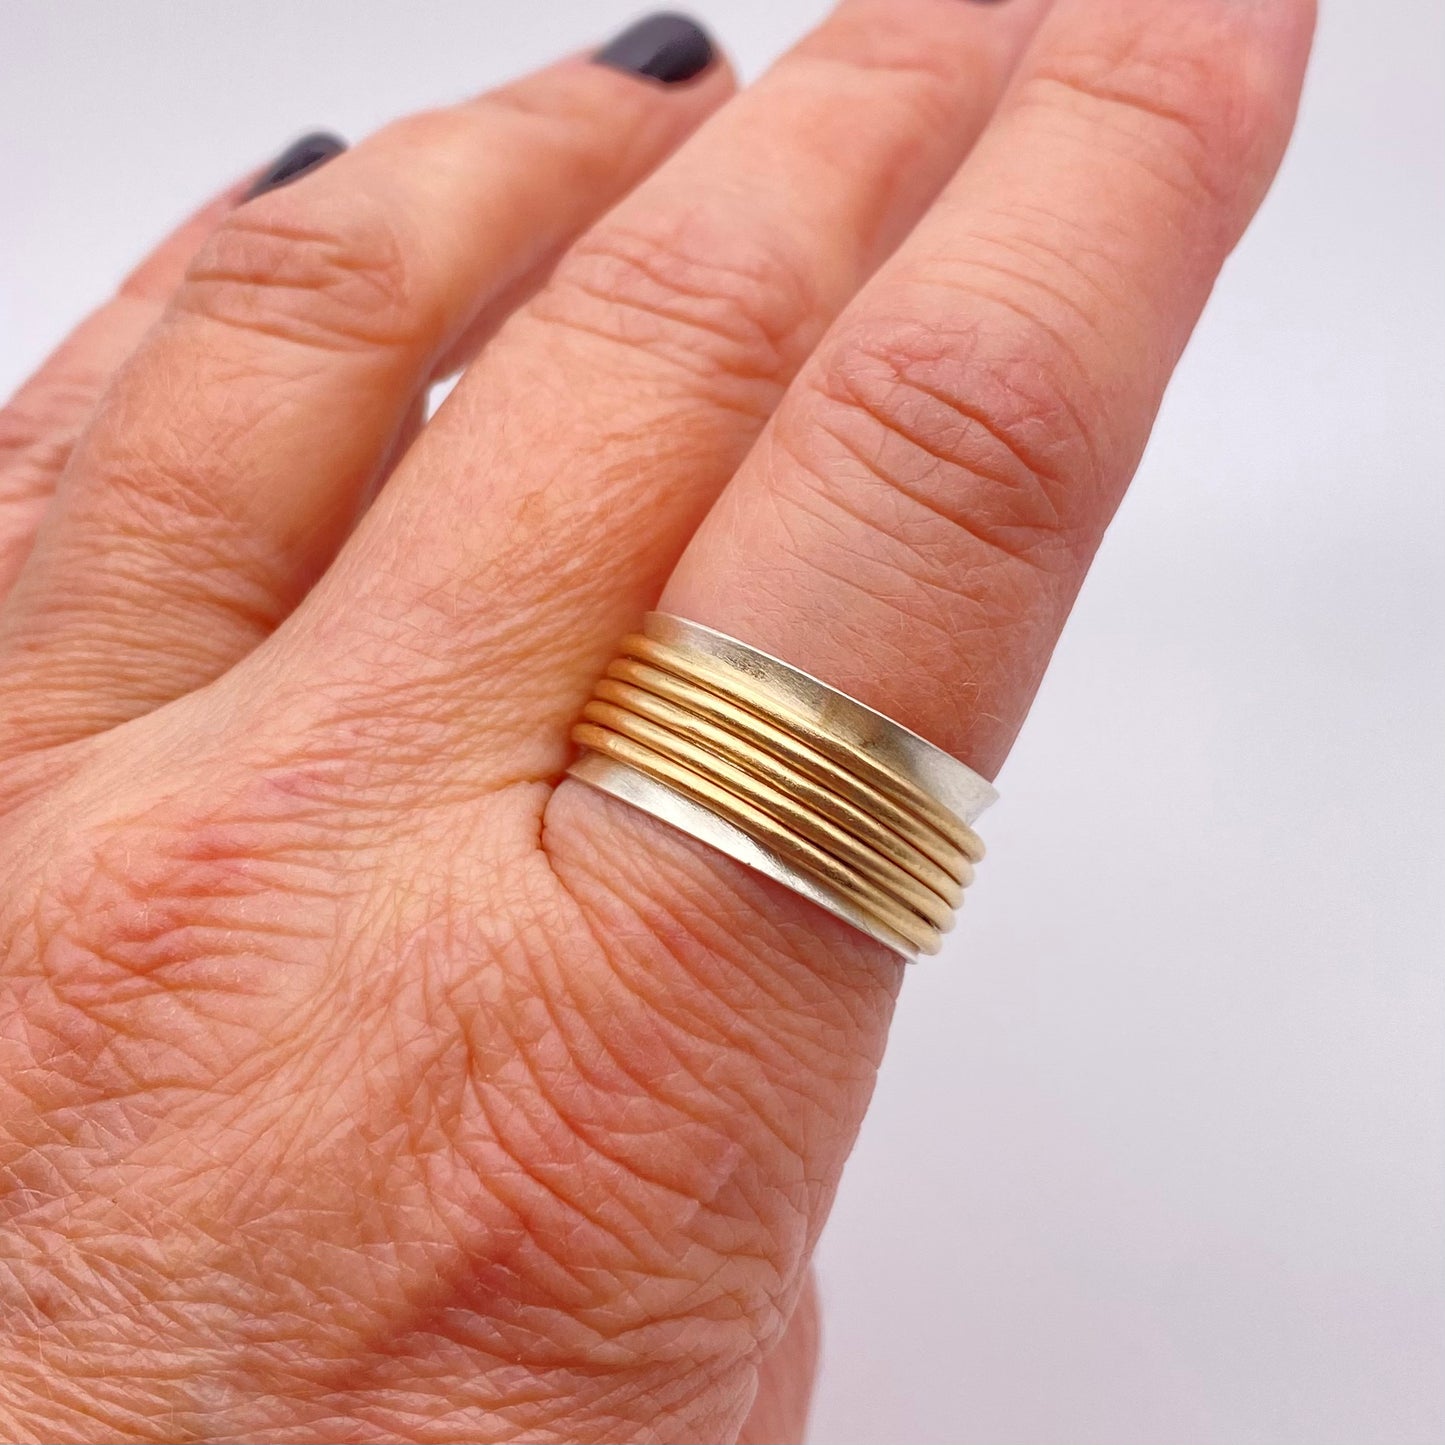 Golden Rings Fidget Spinner Ring